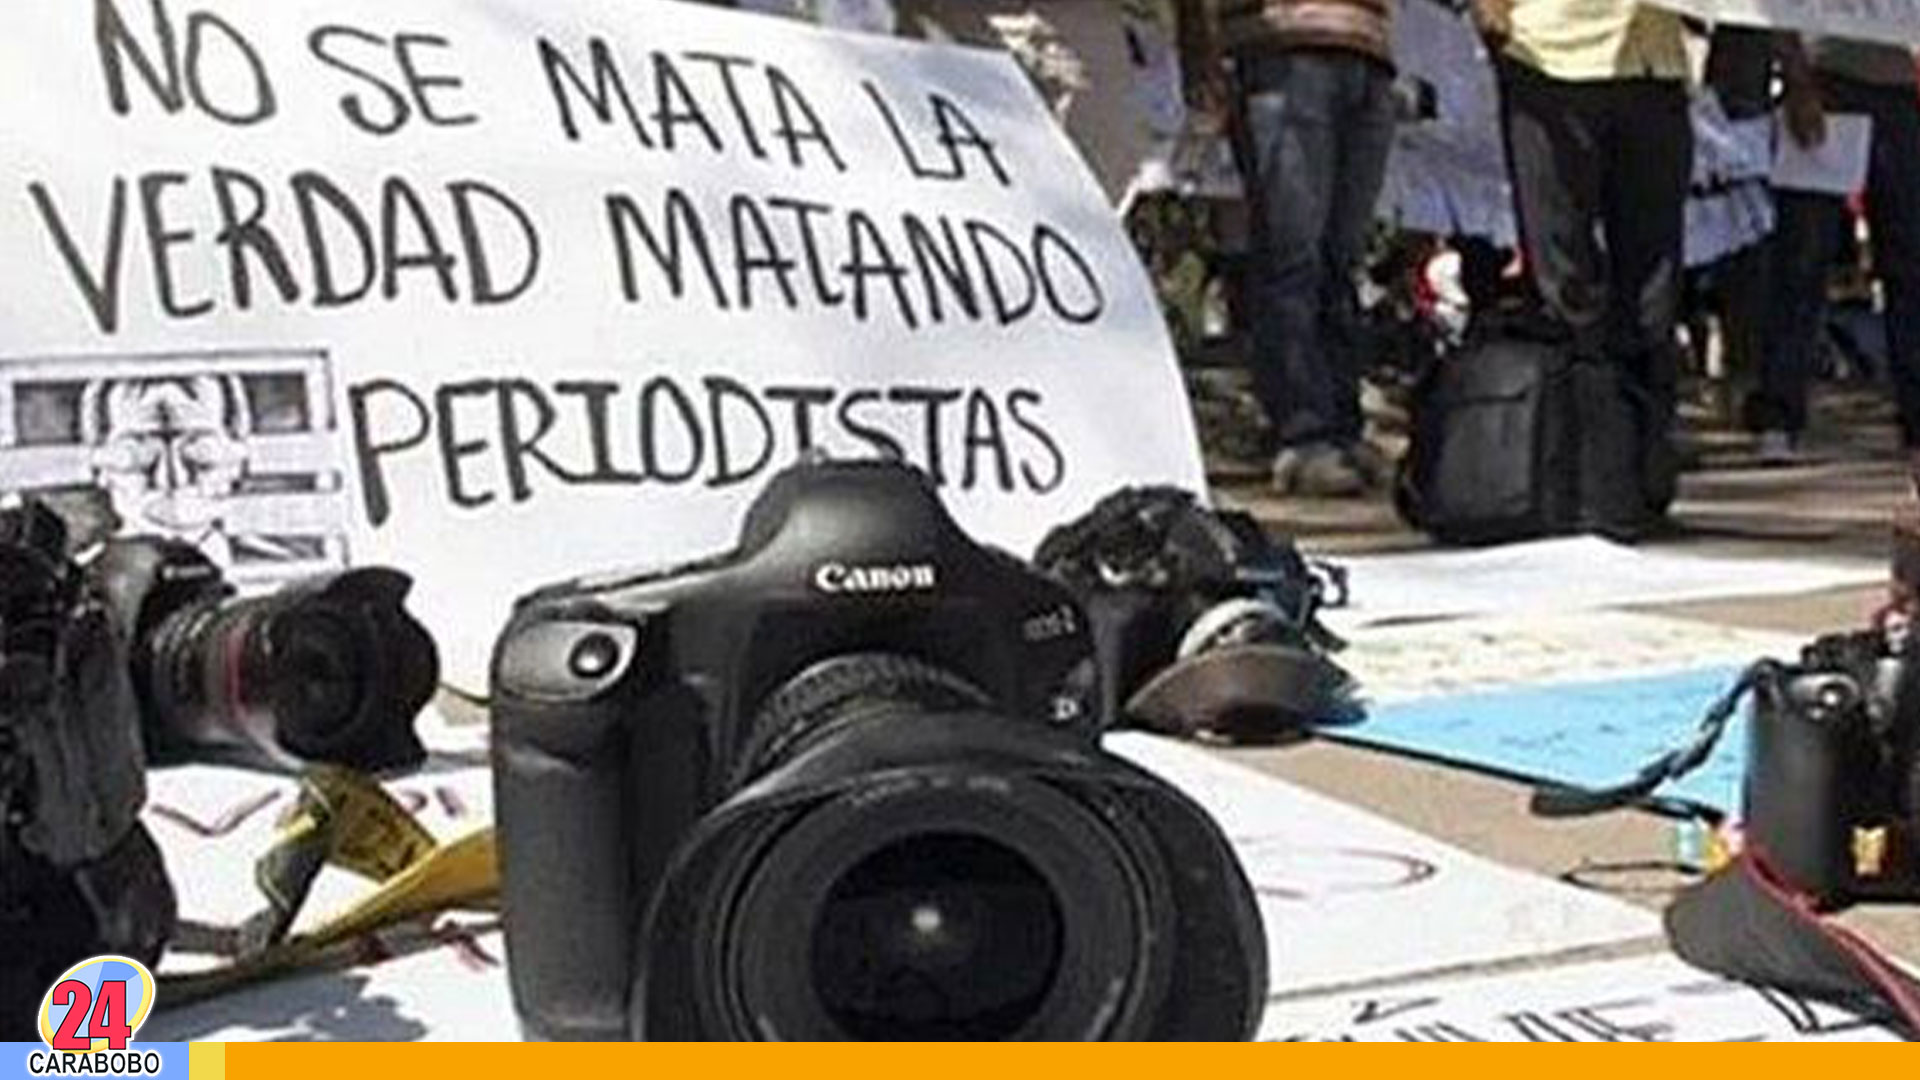 Países peligrosos contra el periodismo - Países peligrosos contra el periodismo